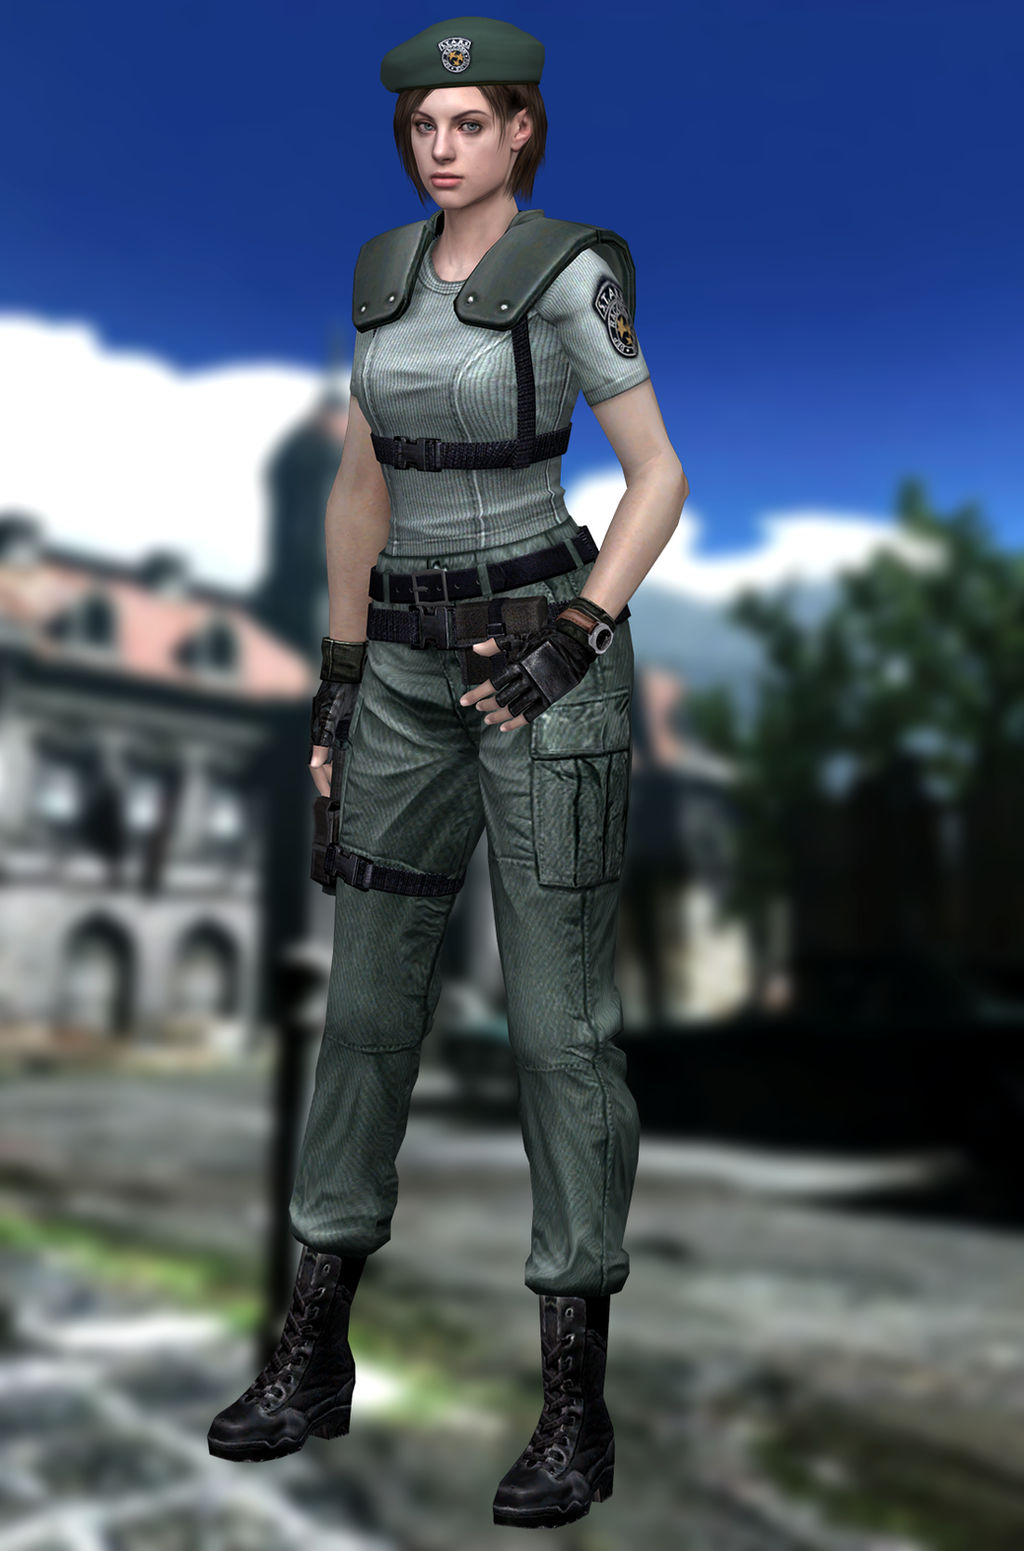 Jill Valentine(S.T.A.R.S.) Resident Evil HD